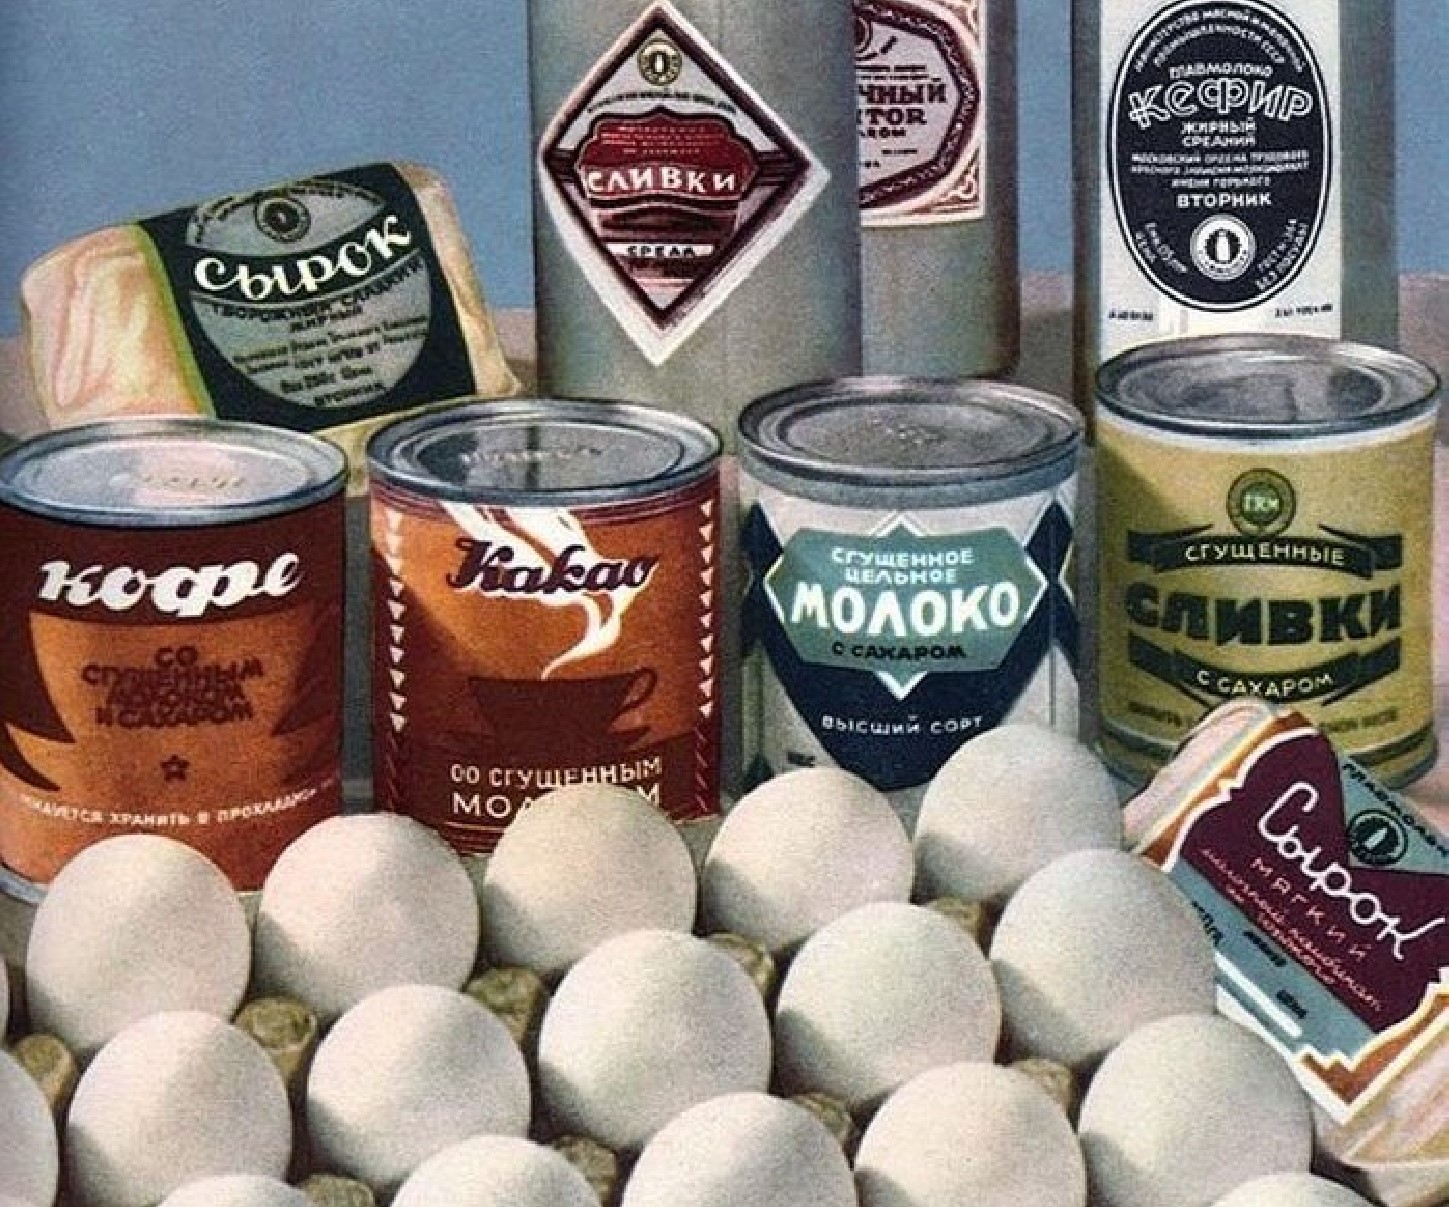 Иллюстрации из книги о вкусной и здоровой пище 1952